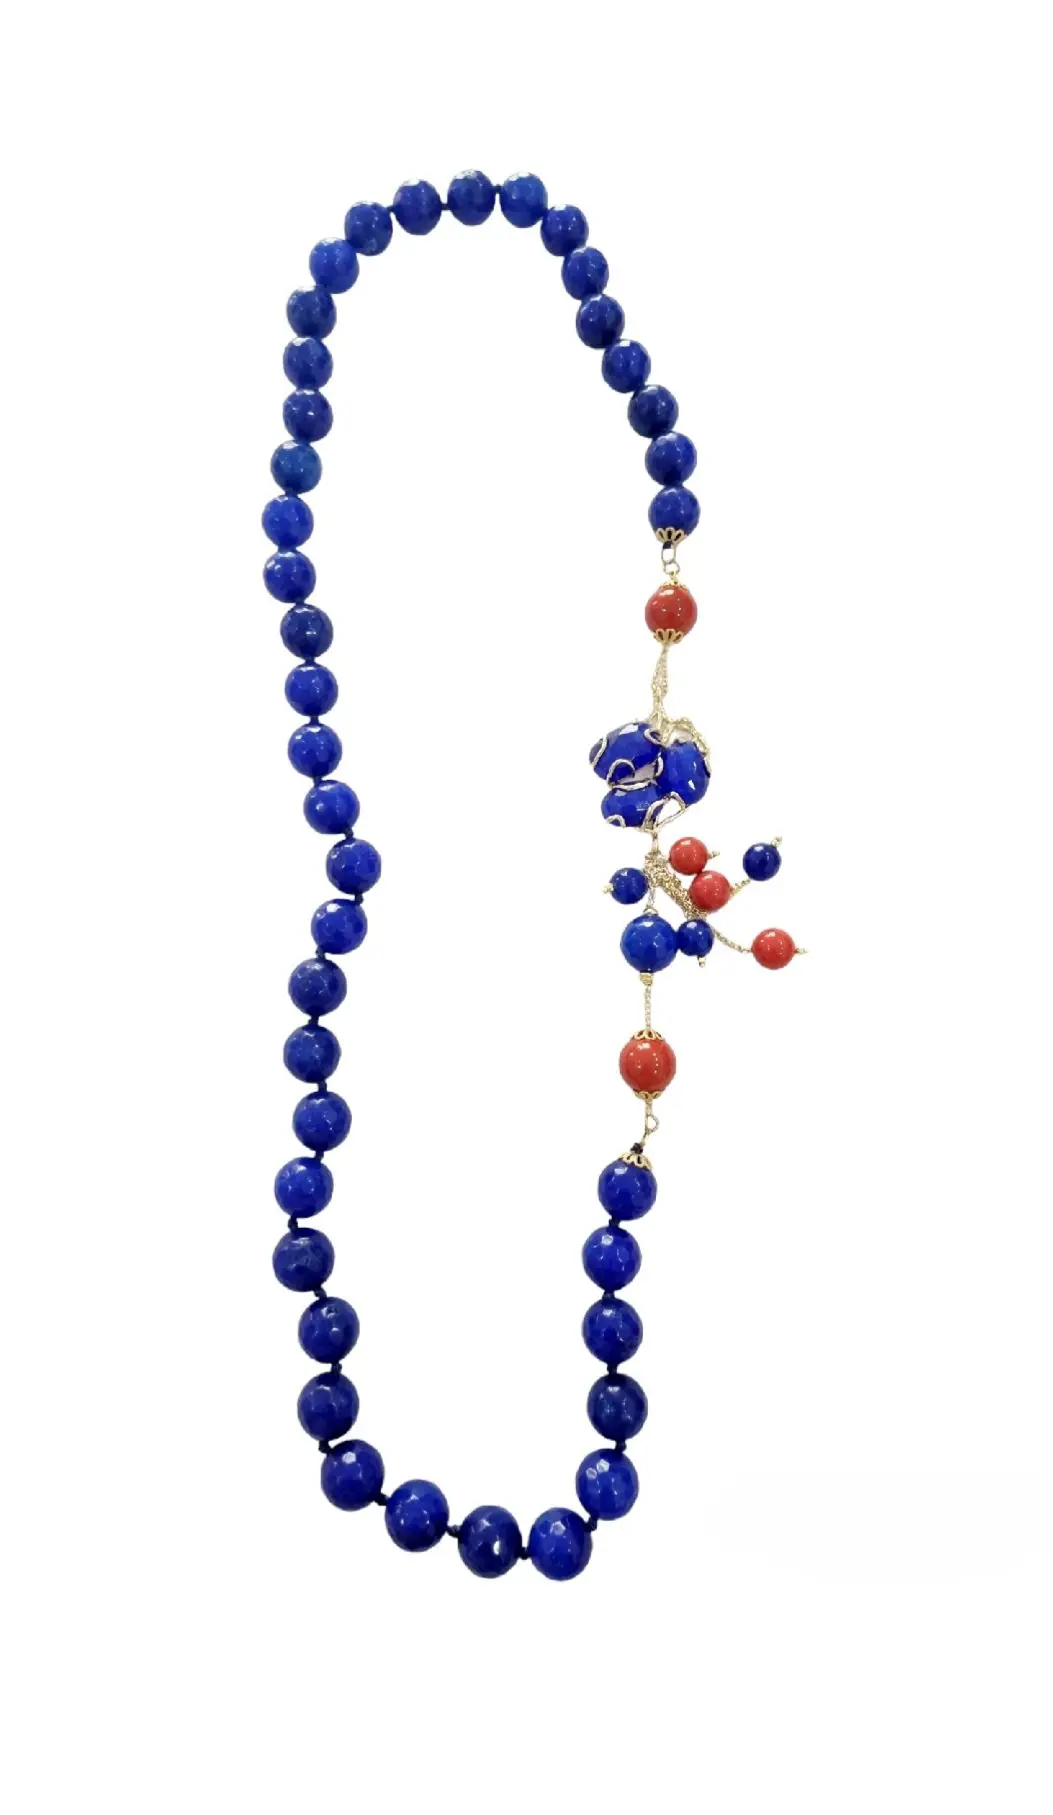 Halskette aus leuchtend blauem Achat und Korallenpaste, seitlich auf Messing montiertes Katzenauge. Länge 78 cm